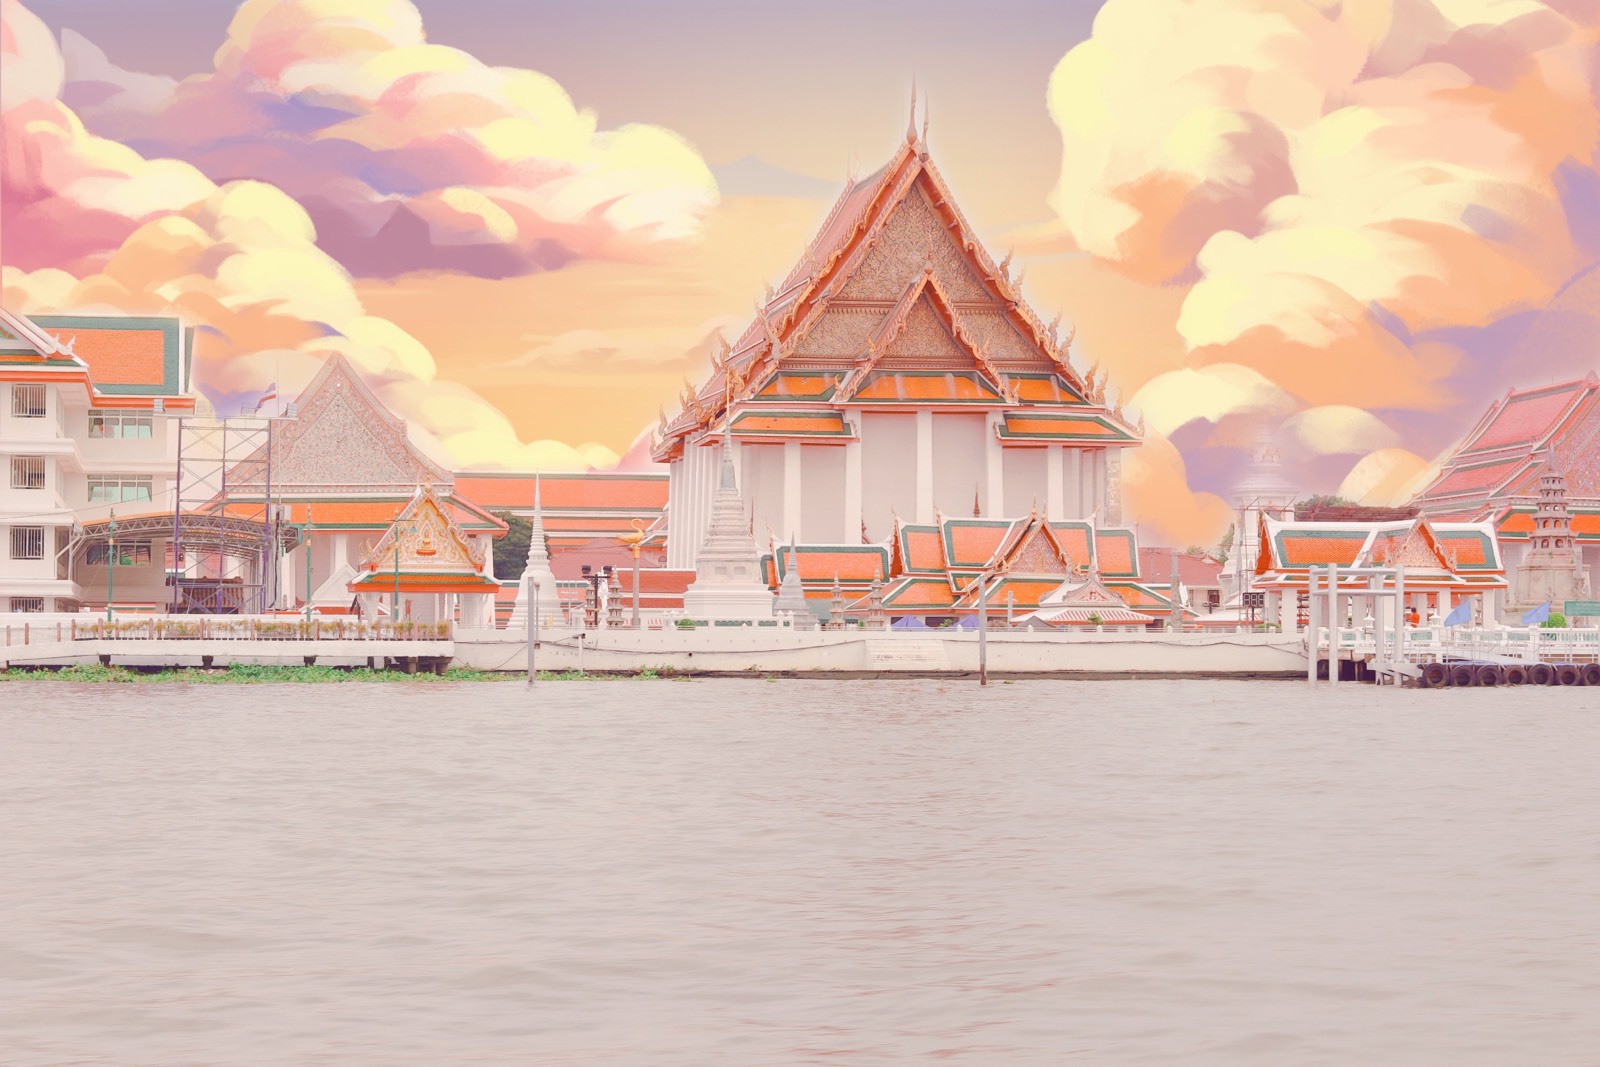 在三象神拍照耽误了，来到大皇宫已经关门，果断直接继续坐船去郑王庙。回程